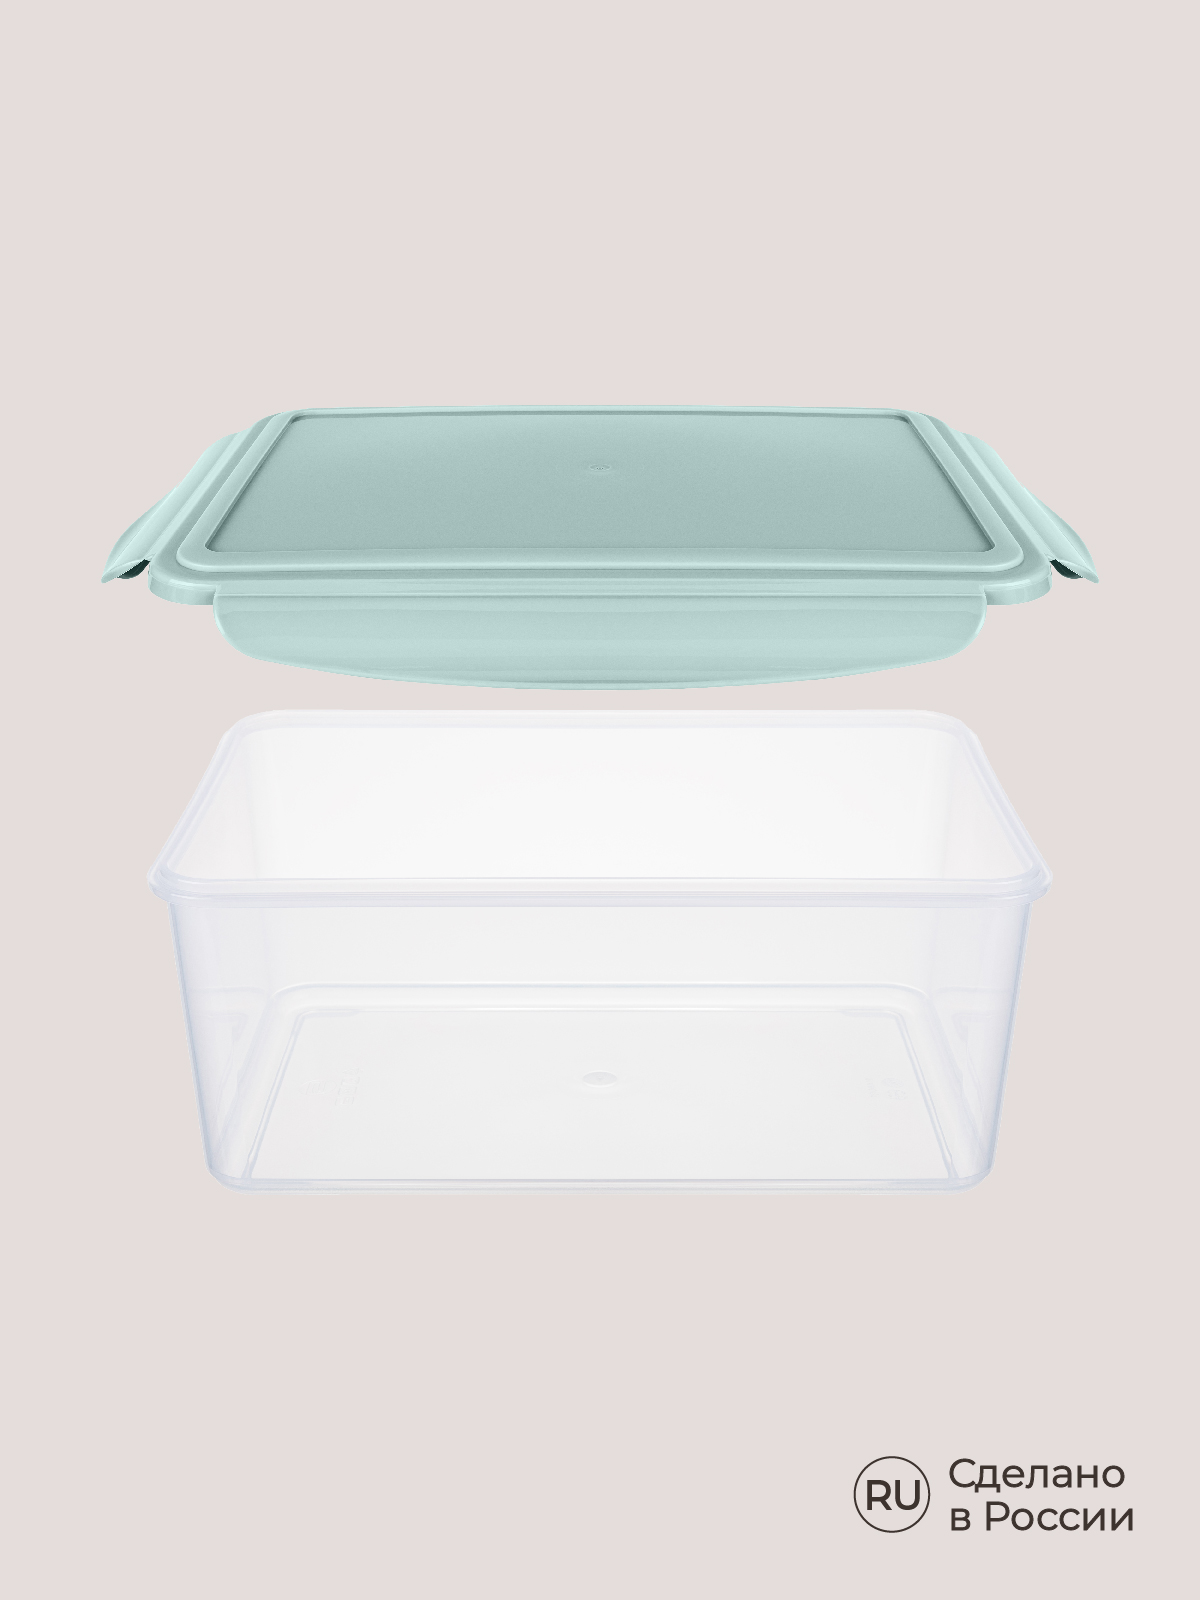 Комплект контейнеров Phibo для холодильника и микроволновой печи Smart Lock 4 шт 2.5л+1.1л+0.5л+0.25л - фото 10